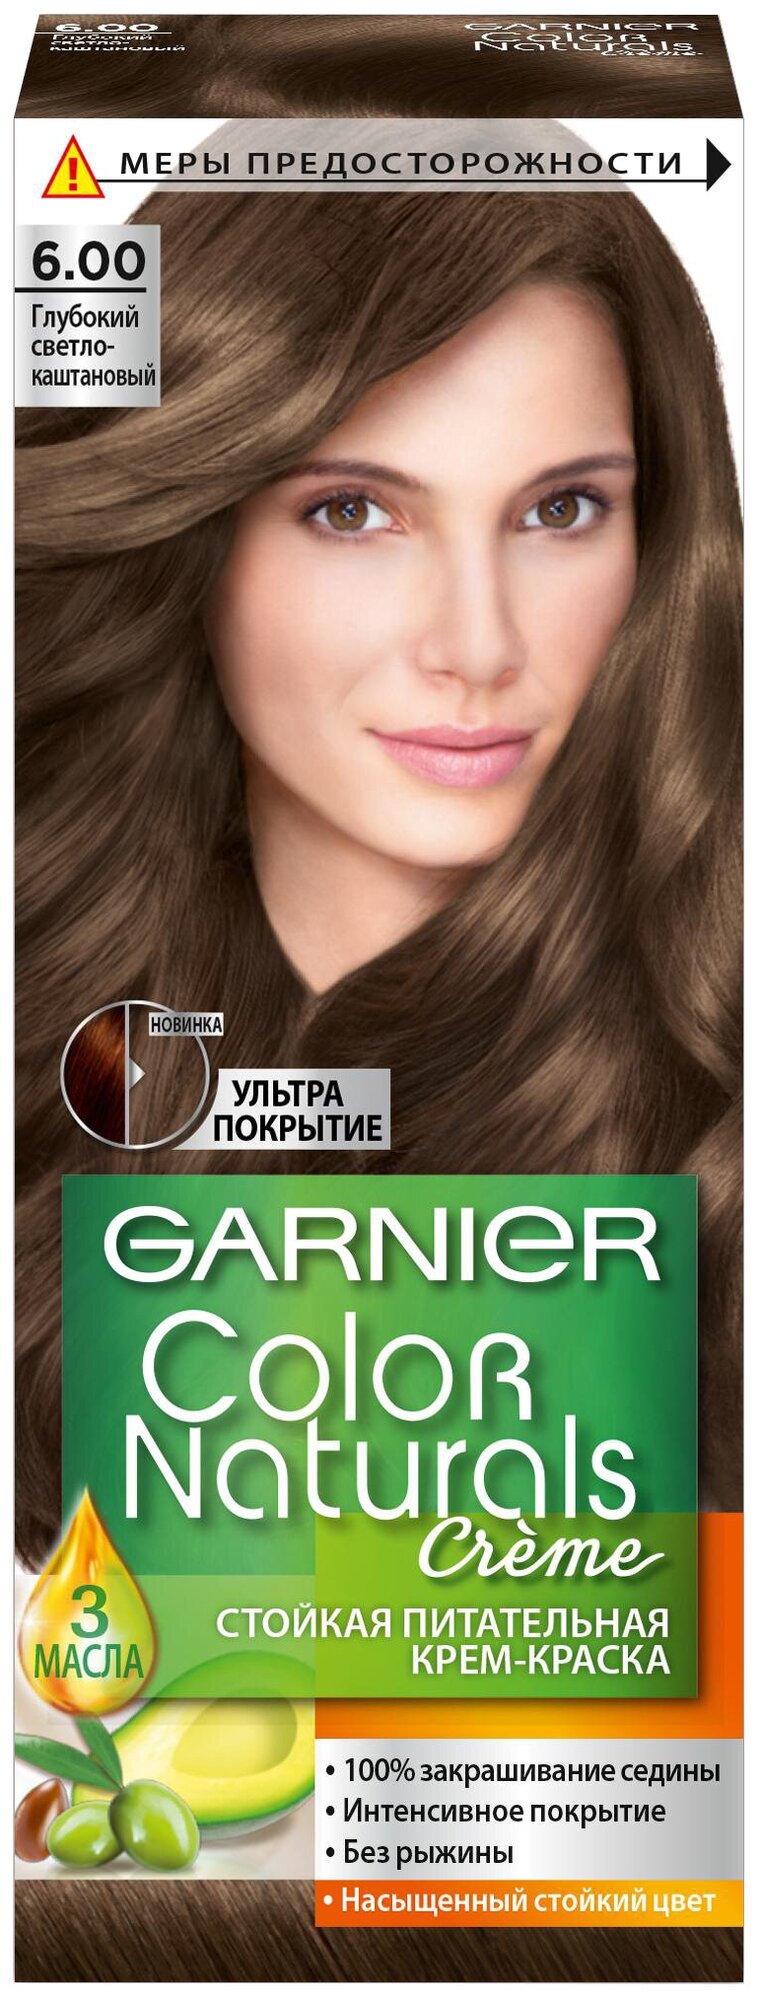 GARNIER Color Naturals стойкая питательная крем-краска для волос